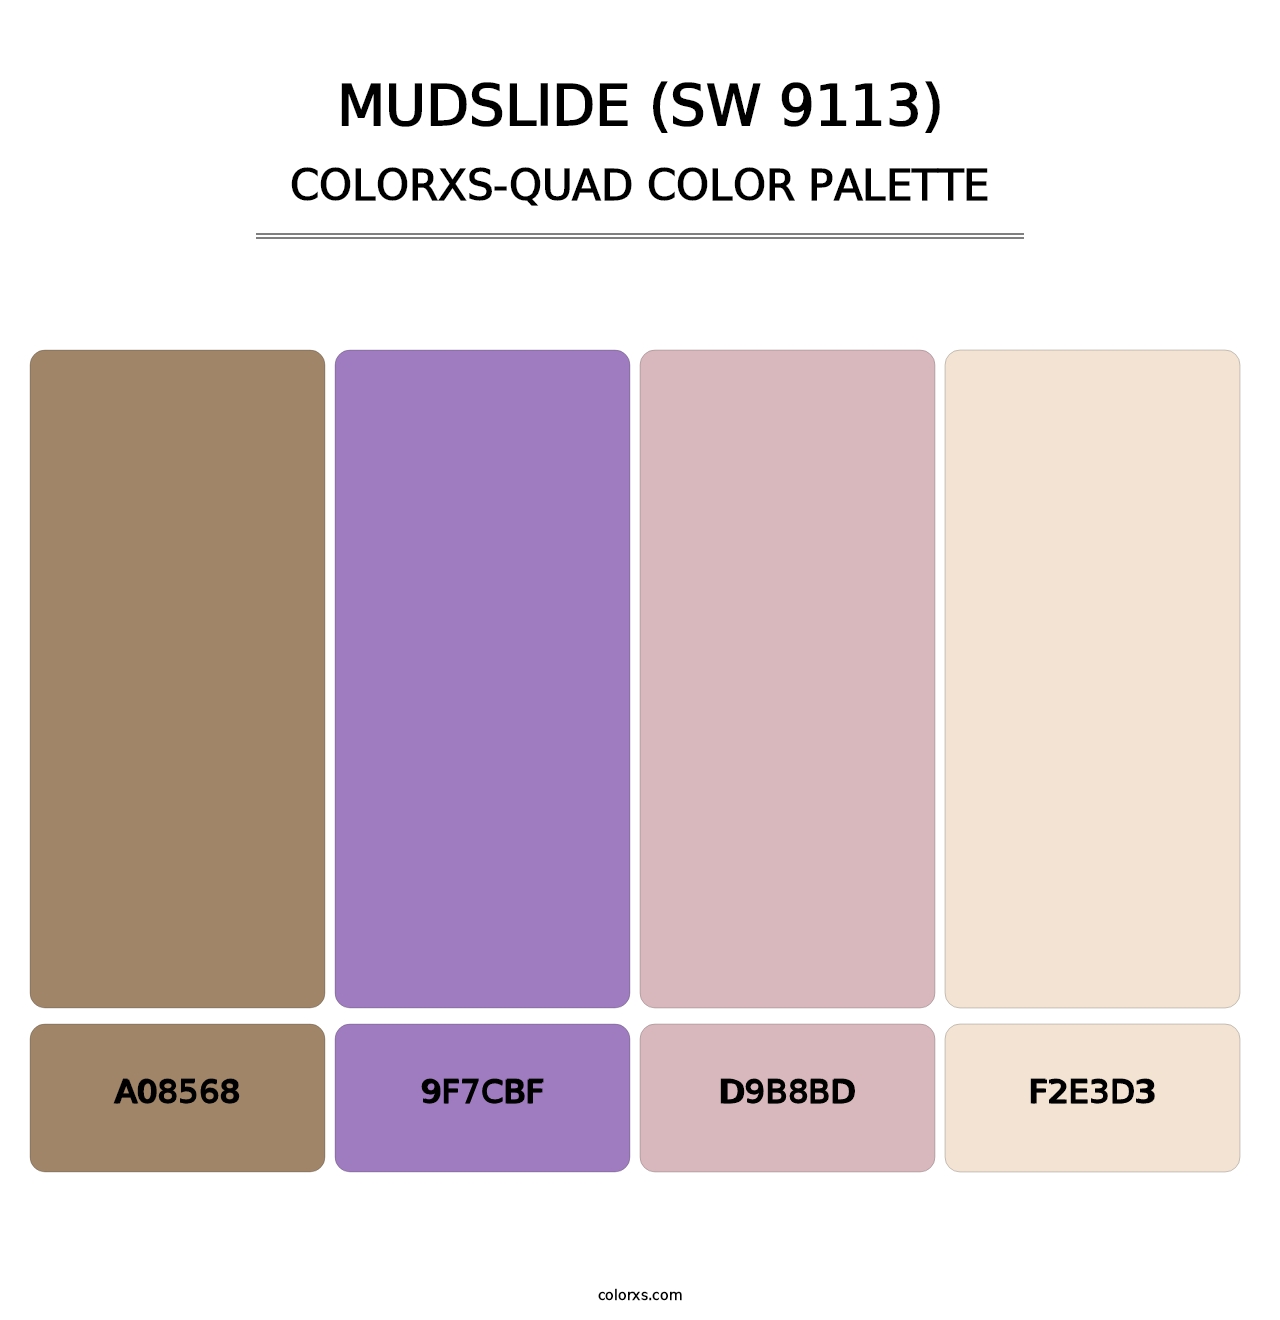 Mudslide (SW 9113) - Colorxs Quad Palette